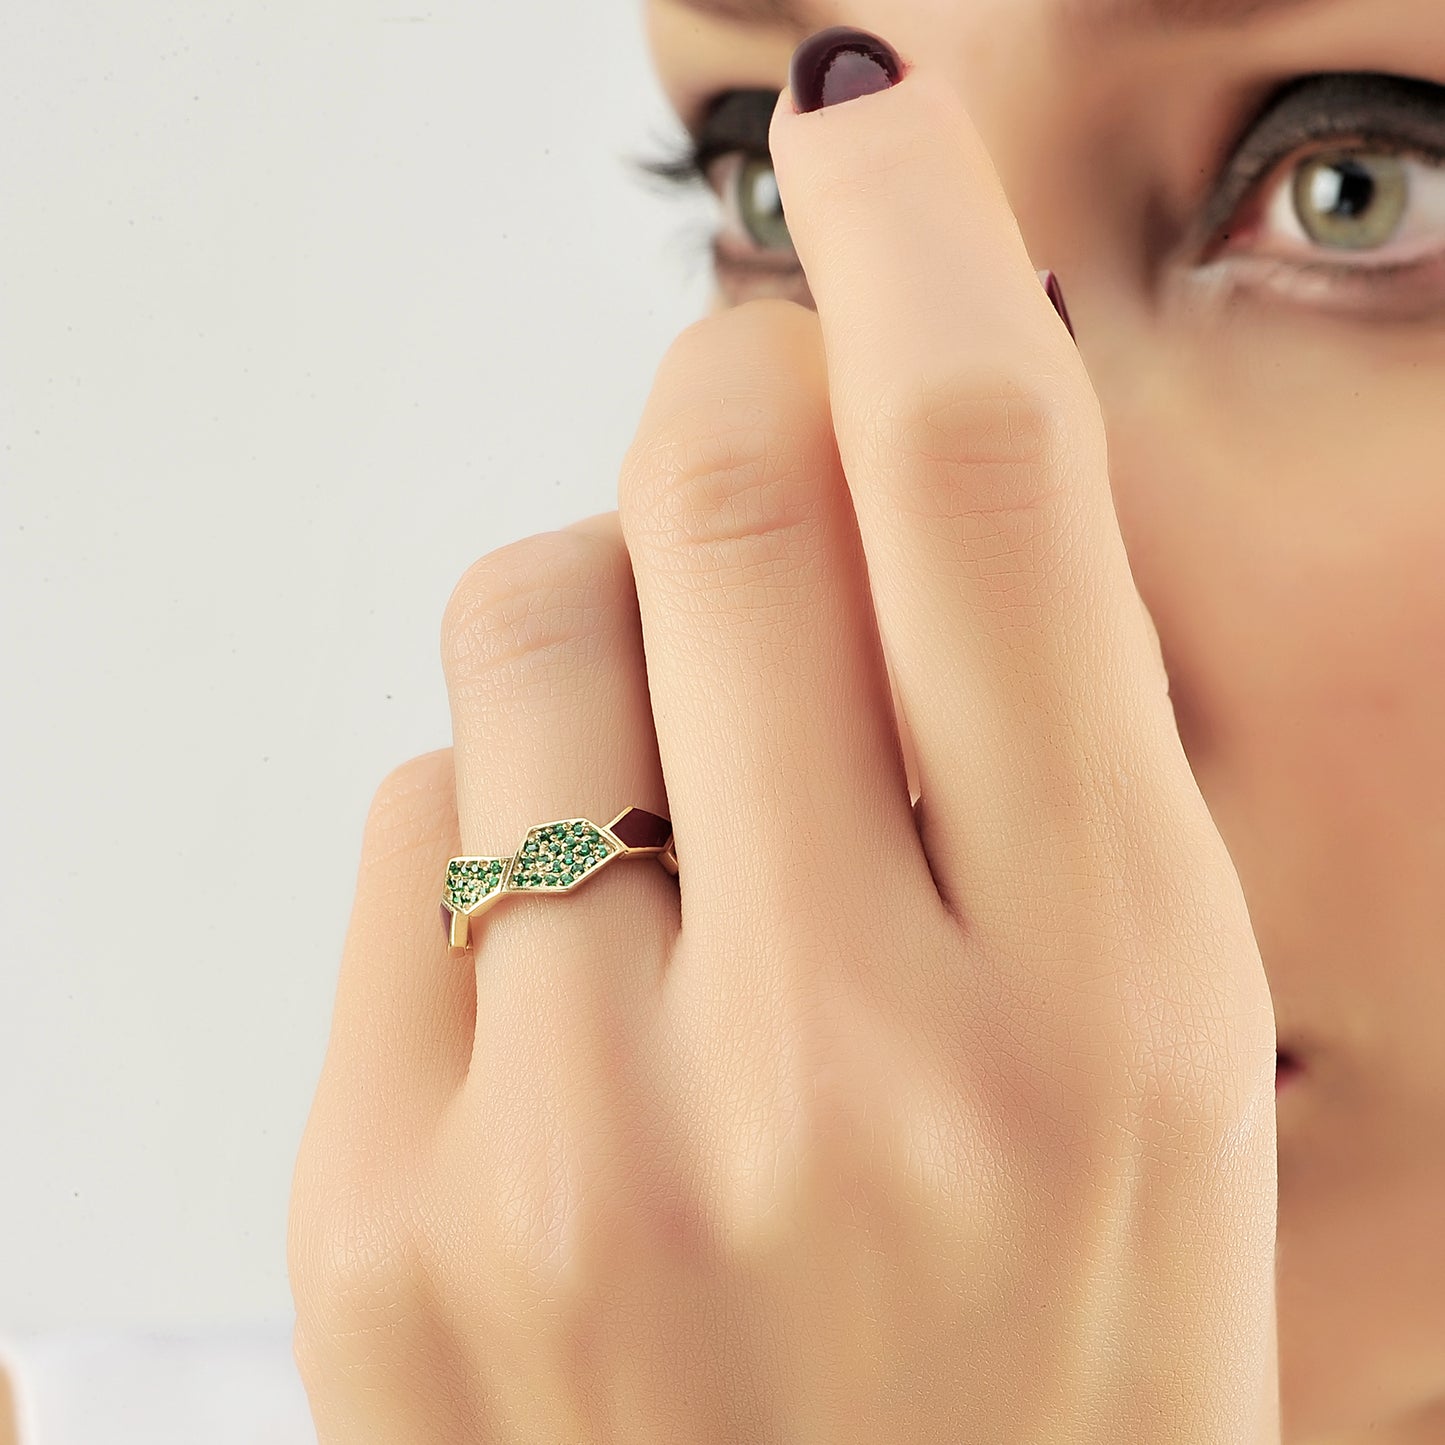 Honingraat Emaille Groene Smaragd Diamanten Ring, Handgemaakte Zeshoekige Gebogen Custom Design Ring Voor Trouwdag